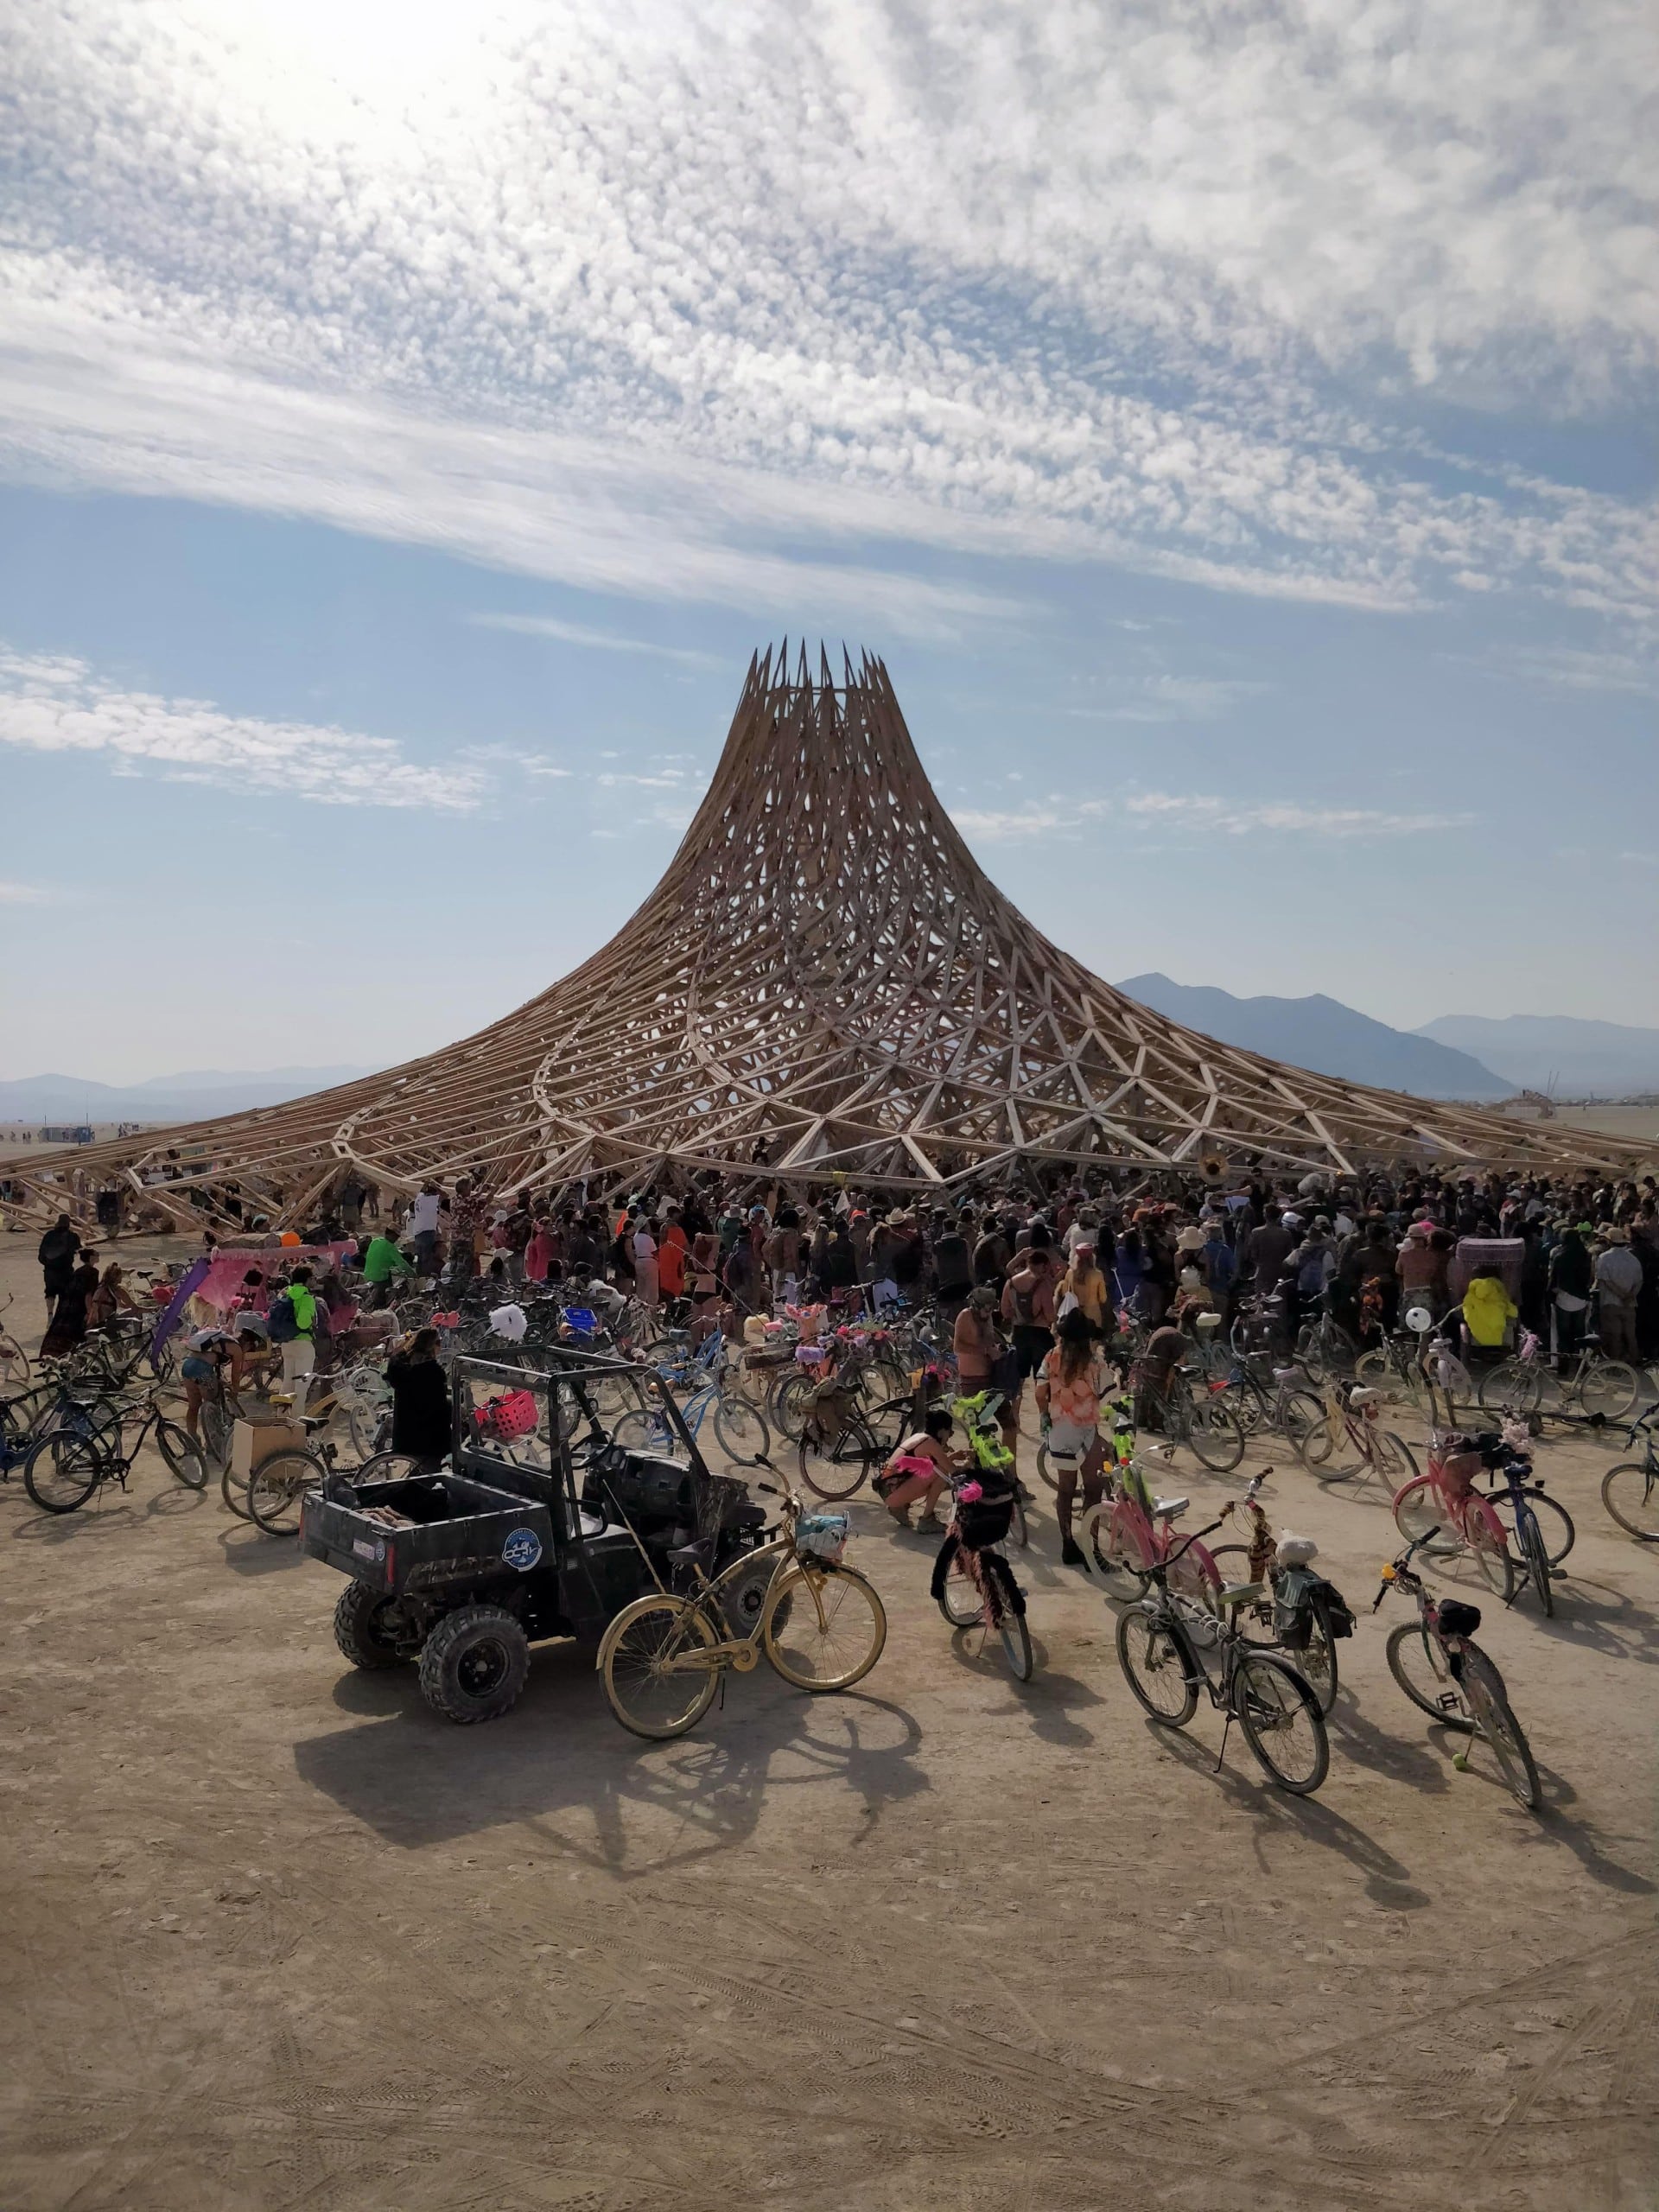 Innenraum des “Temple of Whollyness“ (Tempel der Ganzheit) auf dem Burning Man Festival 2013. Die Tempel auf dem Burning Man Festival sind spirituelle Orte der Trauer für die „Burner“. Ein Gedenkort für alle, die einen geliebten Menschen verloren haben. Foto: via Wiki Commons